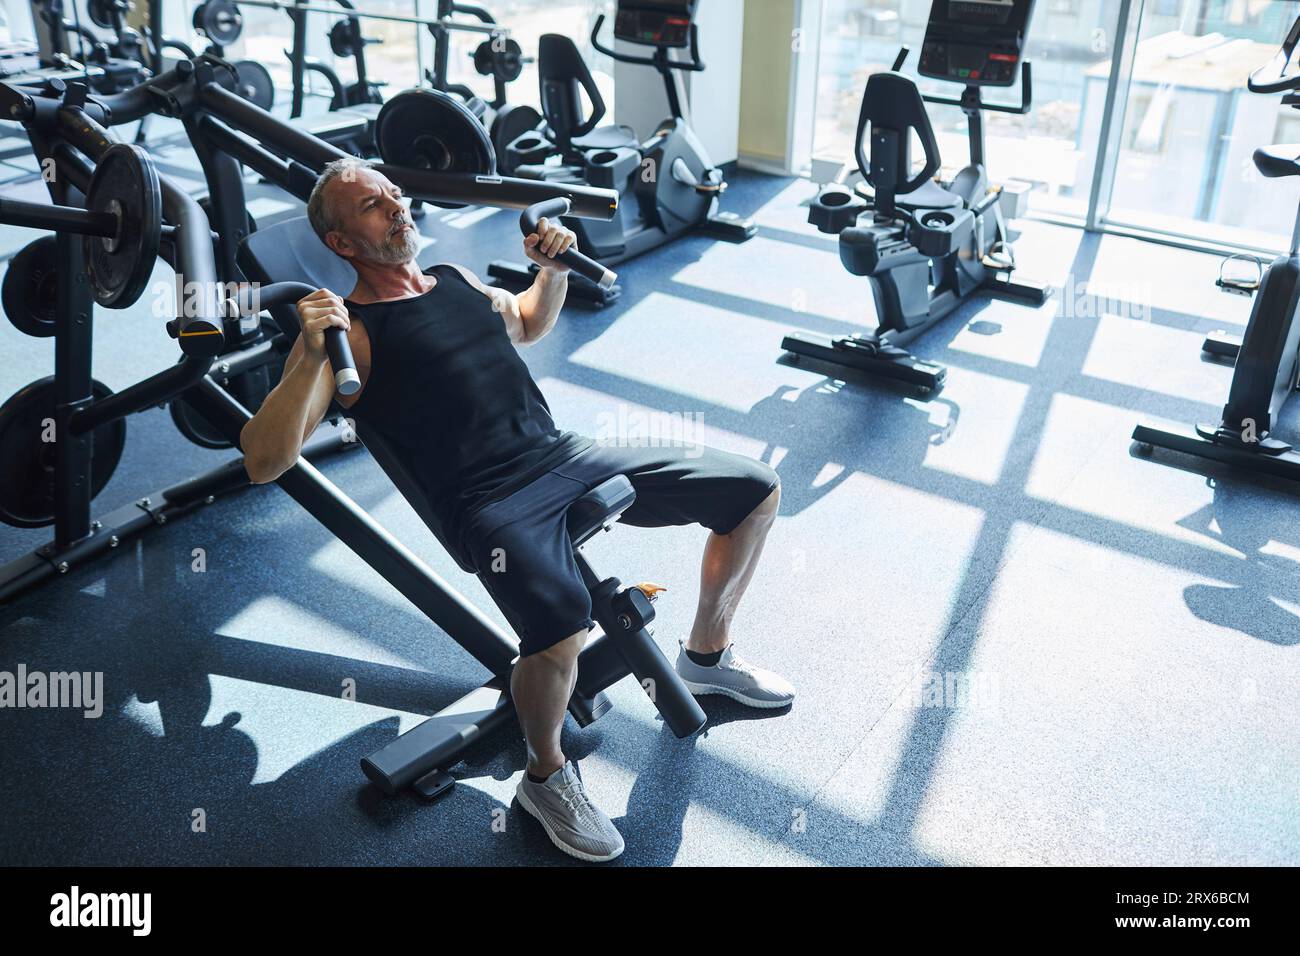 Homme mûr faisant des exercices de musculation dans la salle de gym Banque D'Images